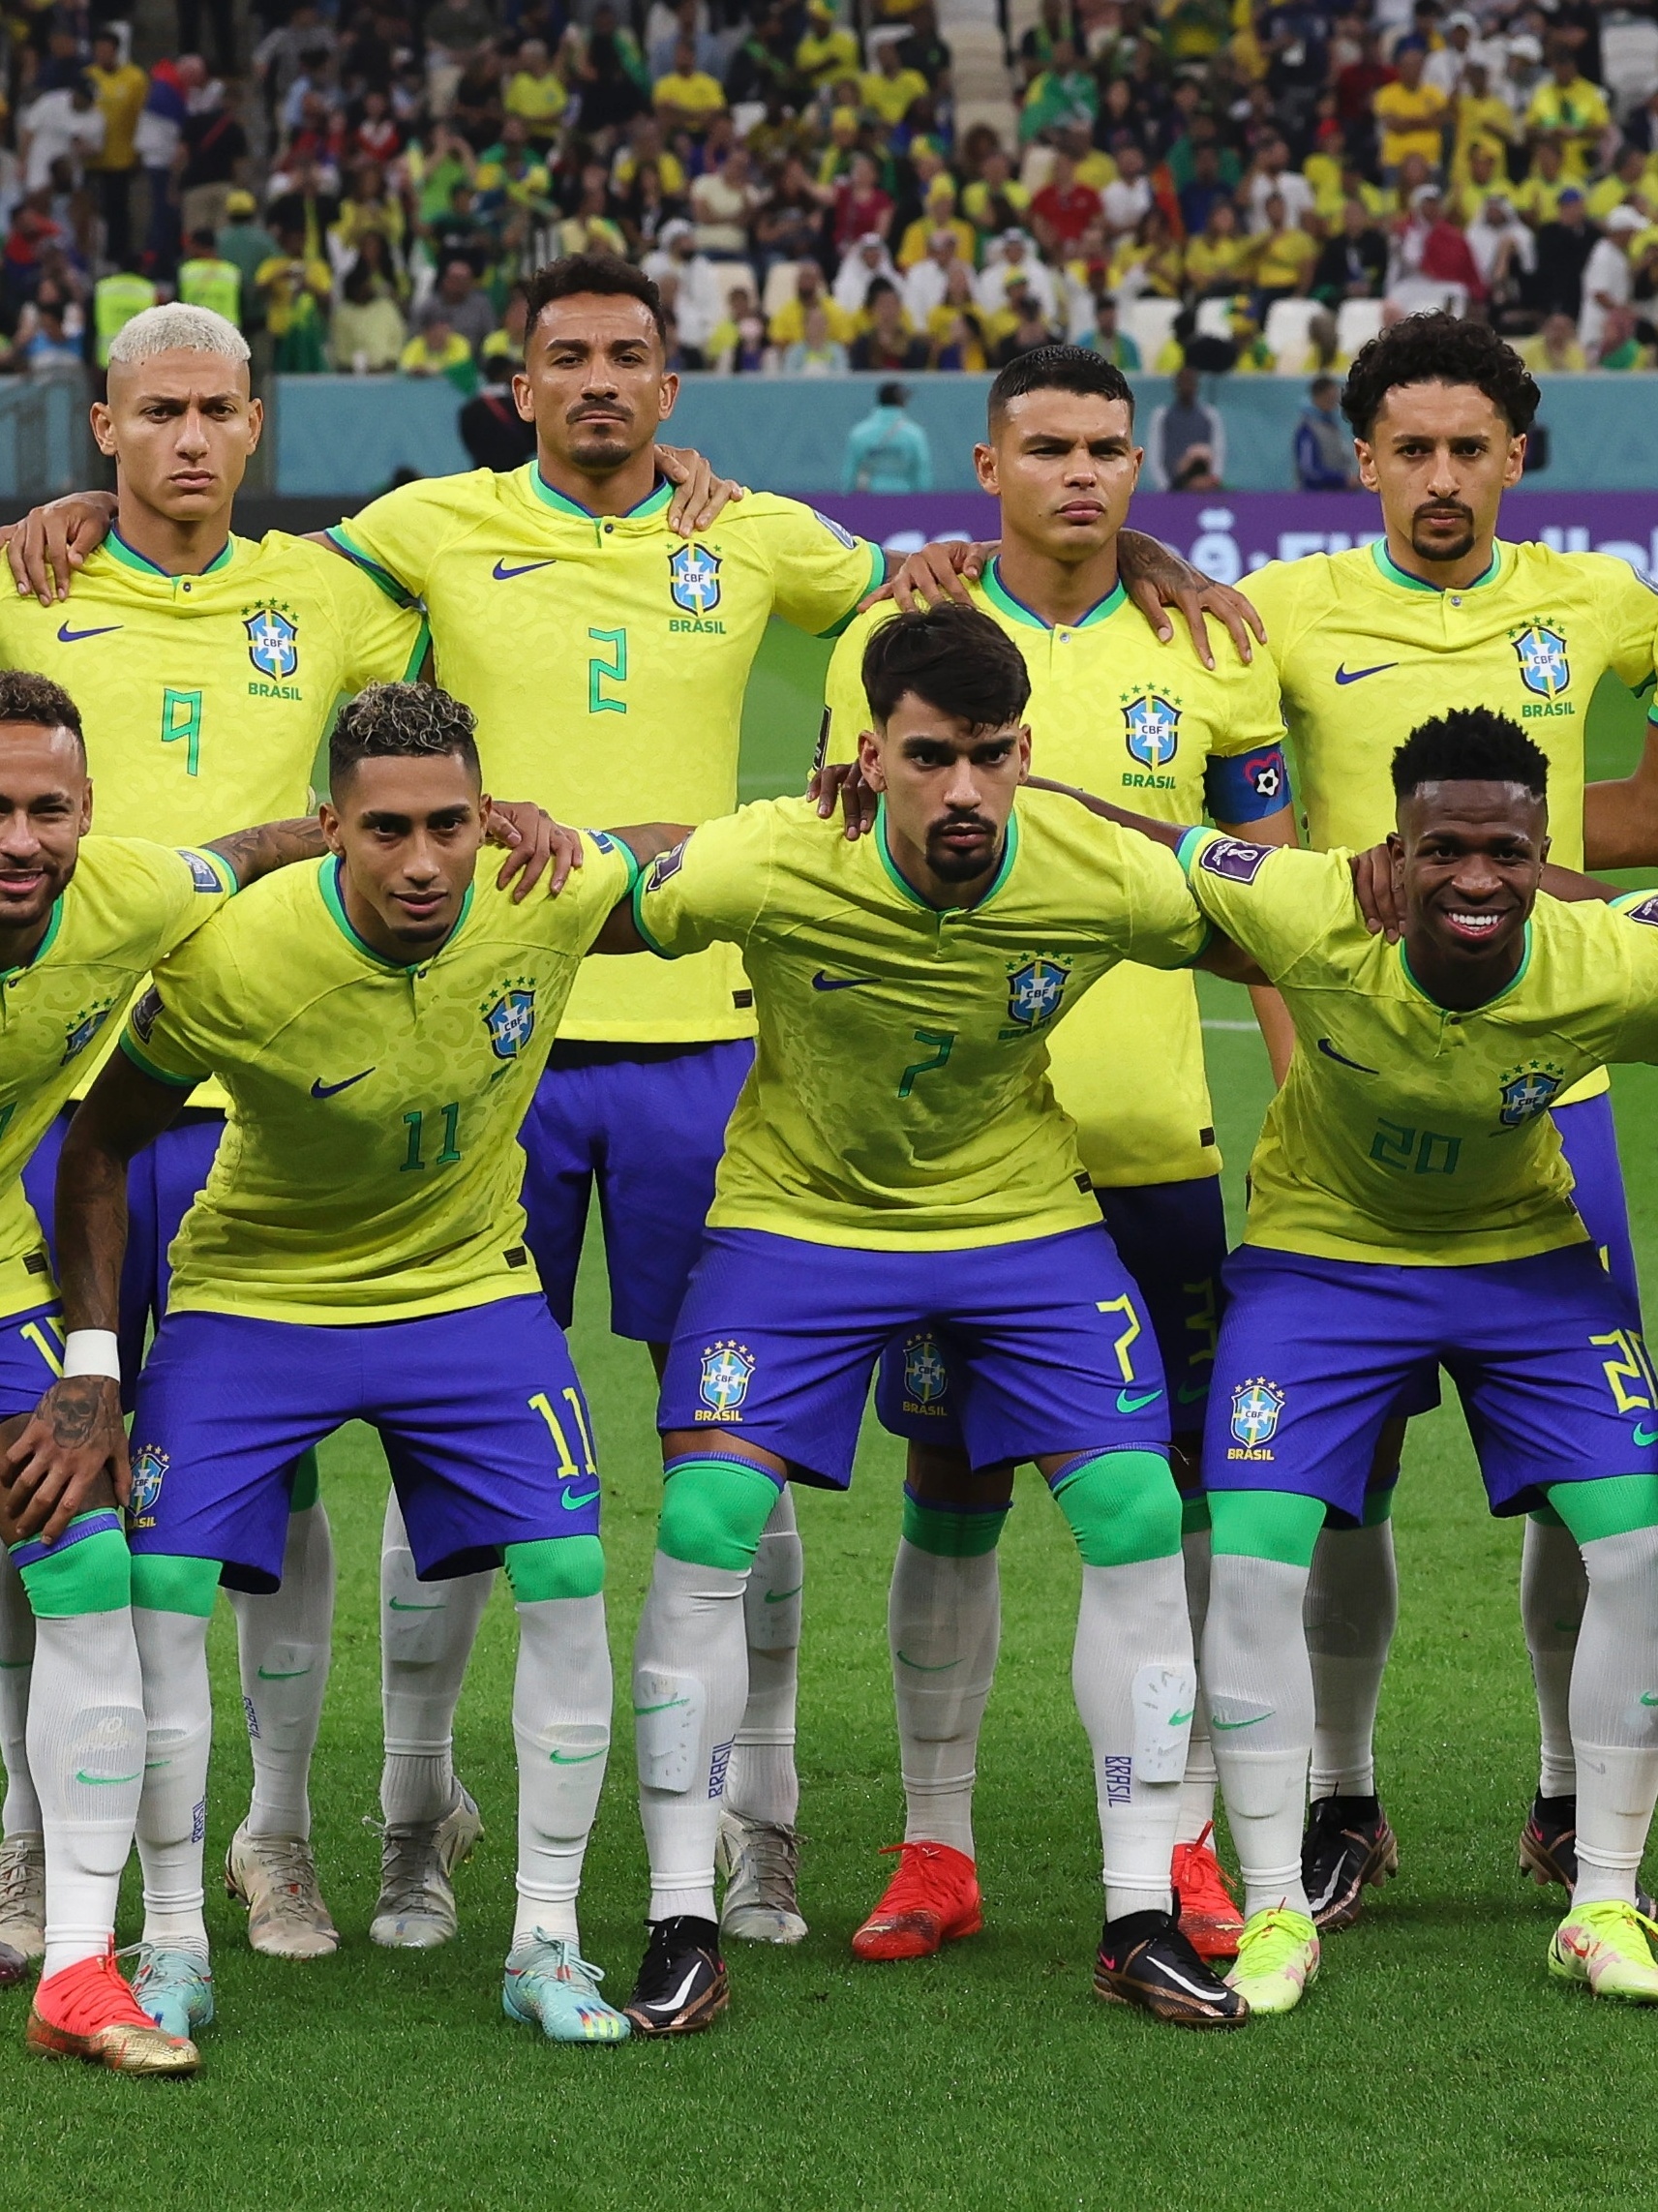 Site revela possível nova camisa da seleção brasileira